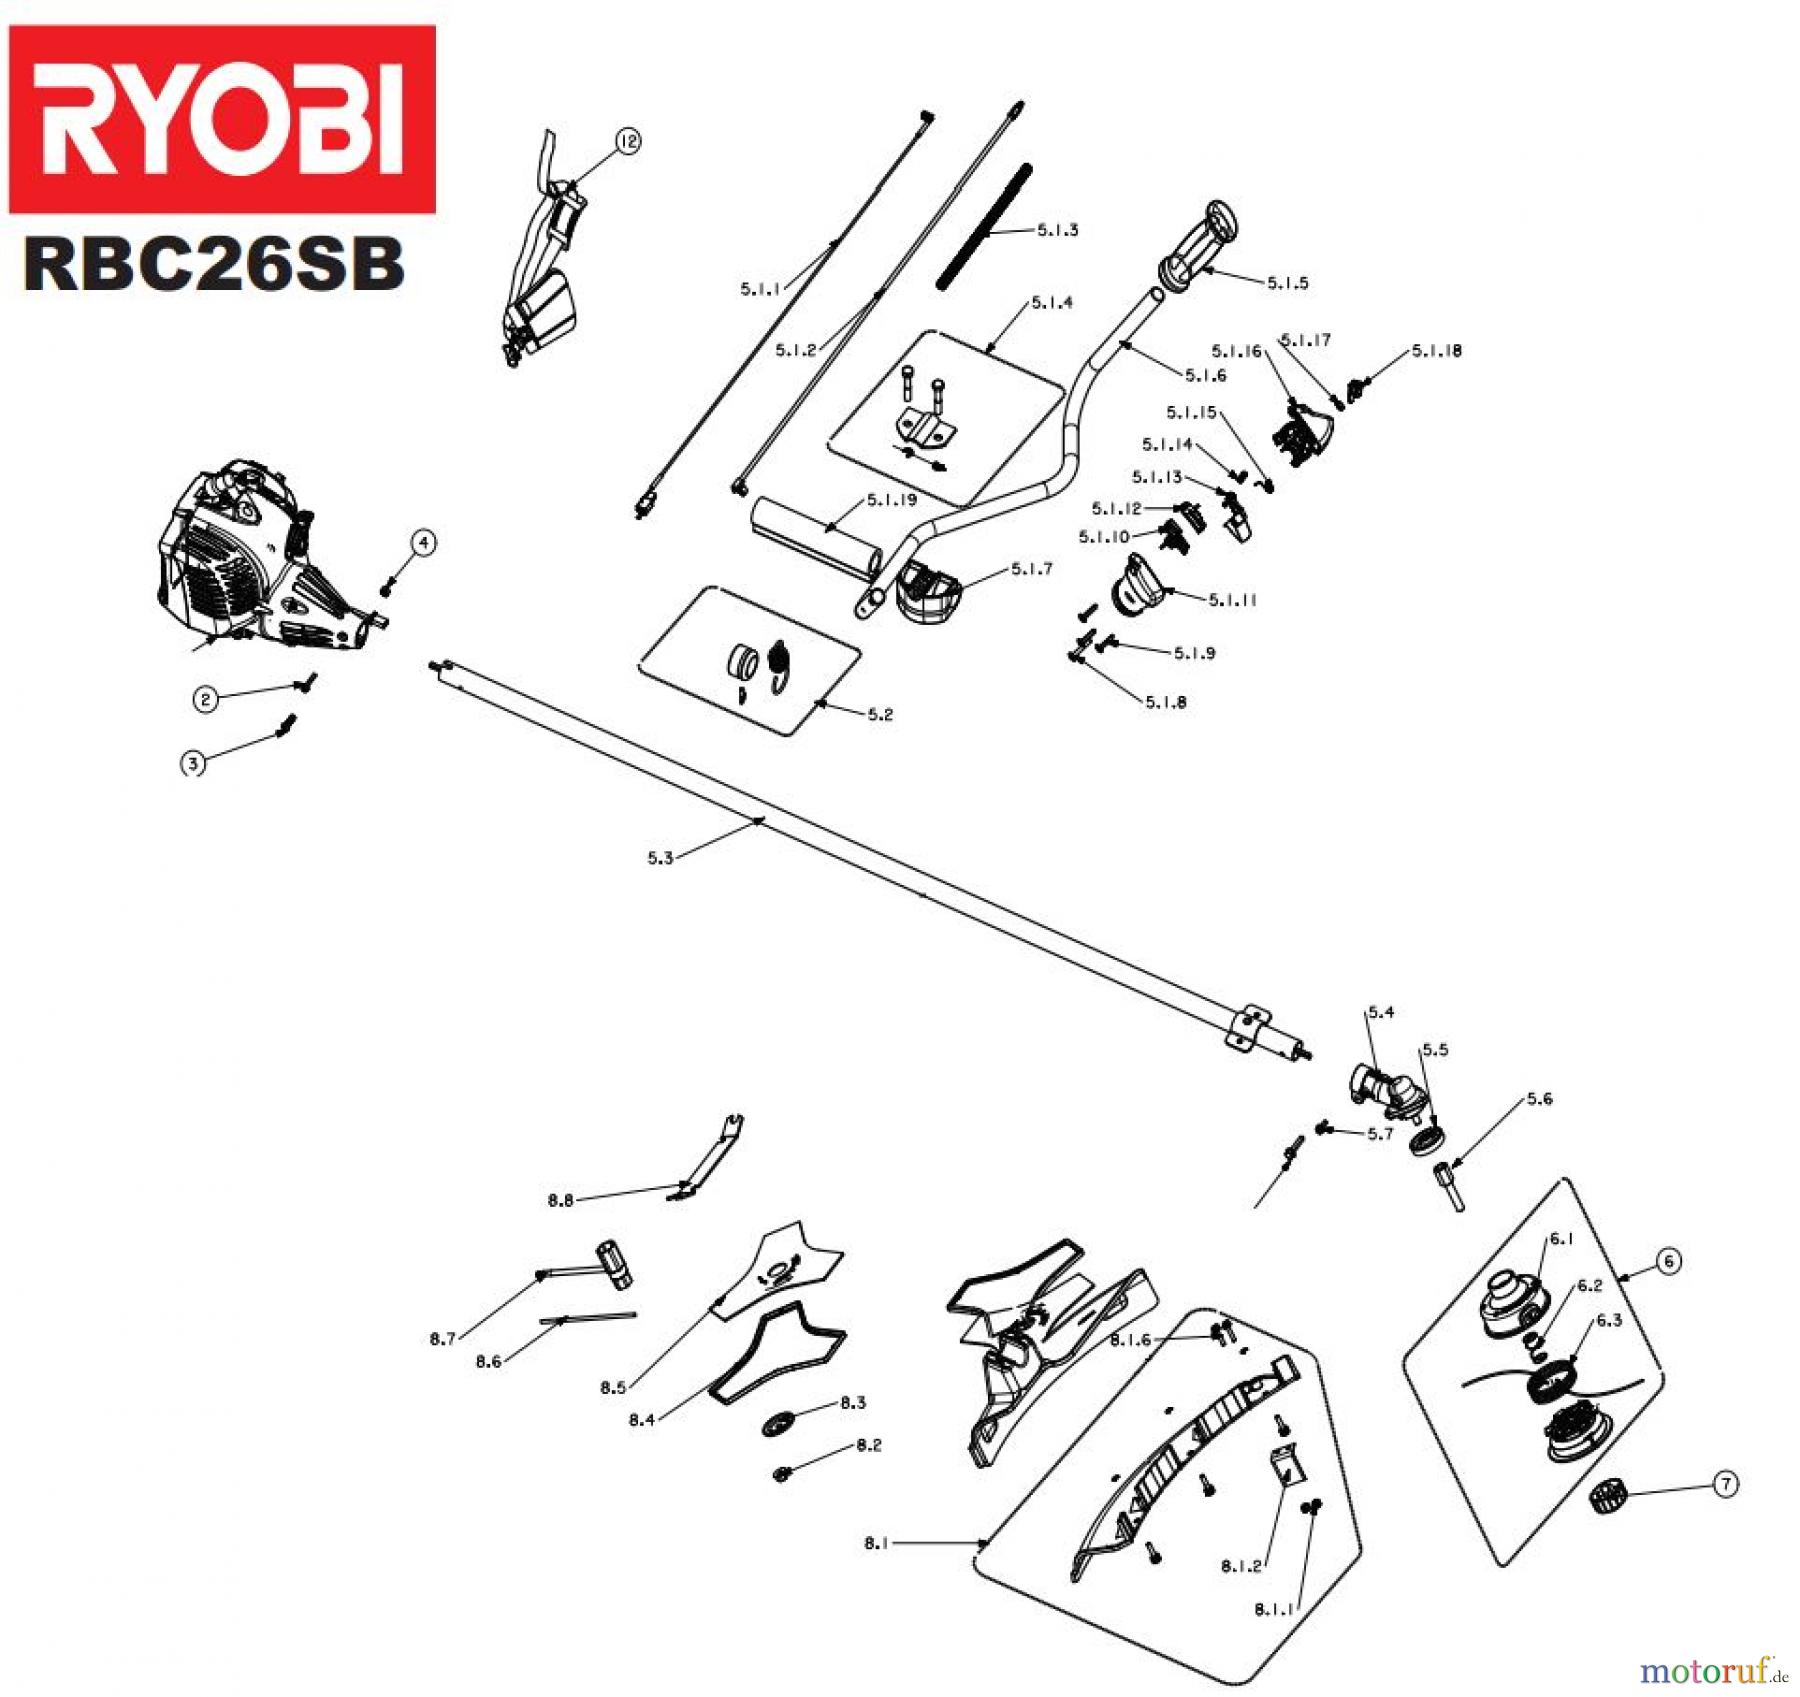  Ryobi Sensen Freischneider Benzin RBC26SB Seite 1